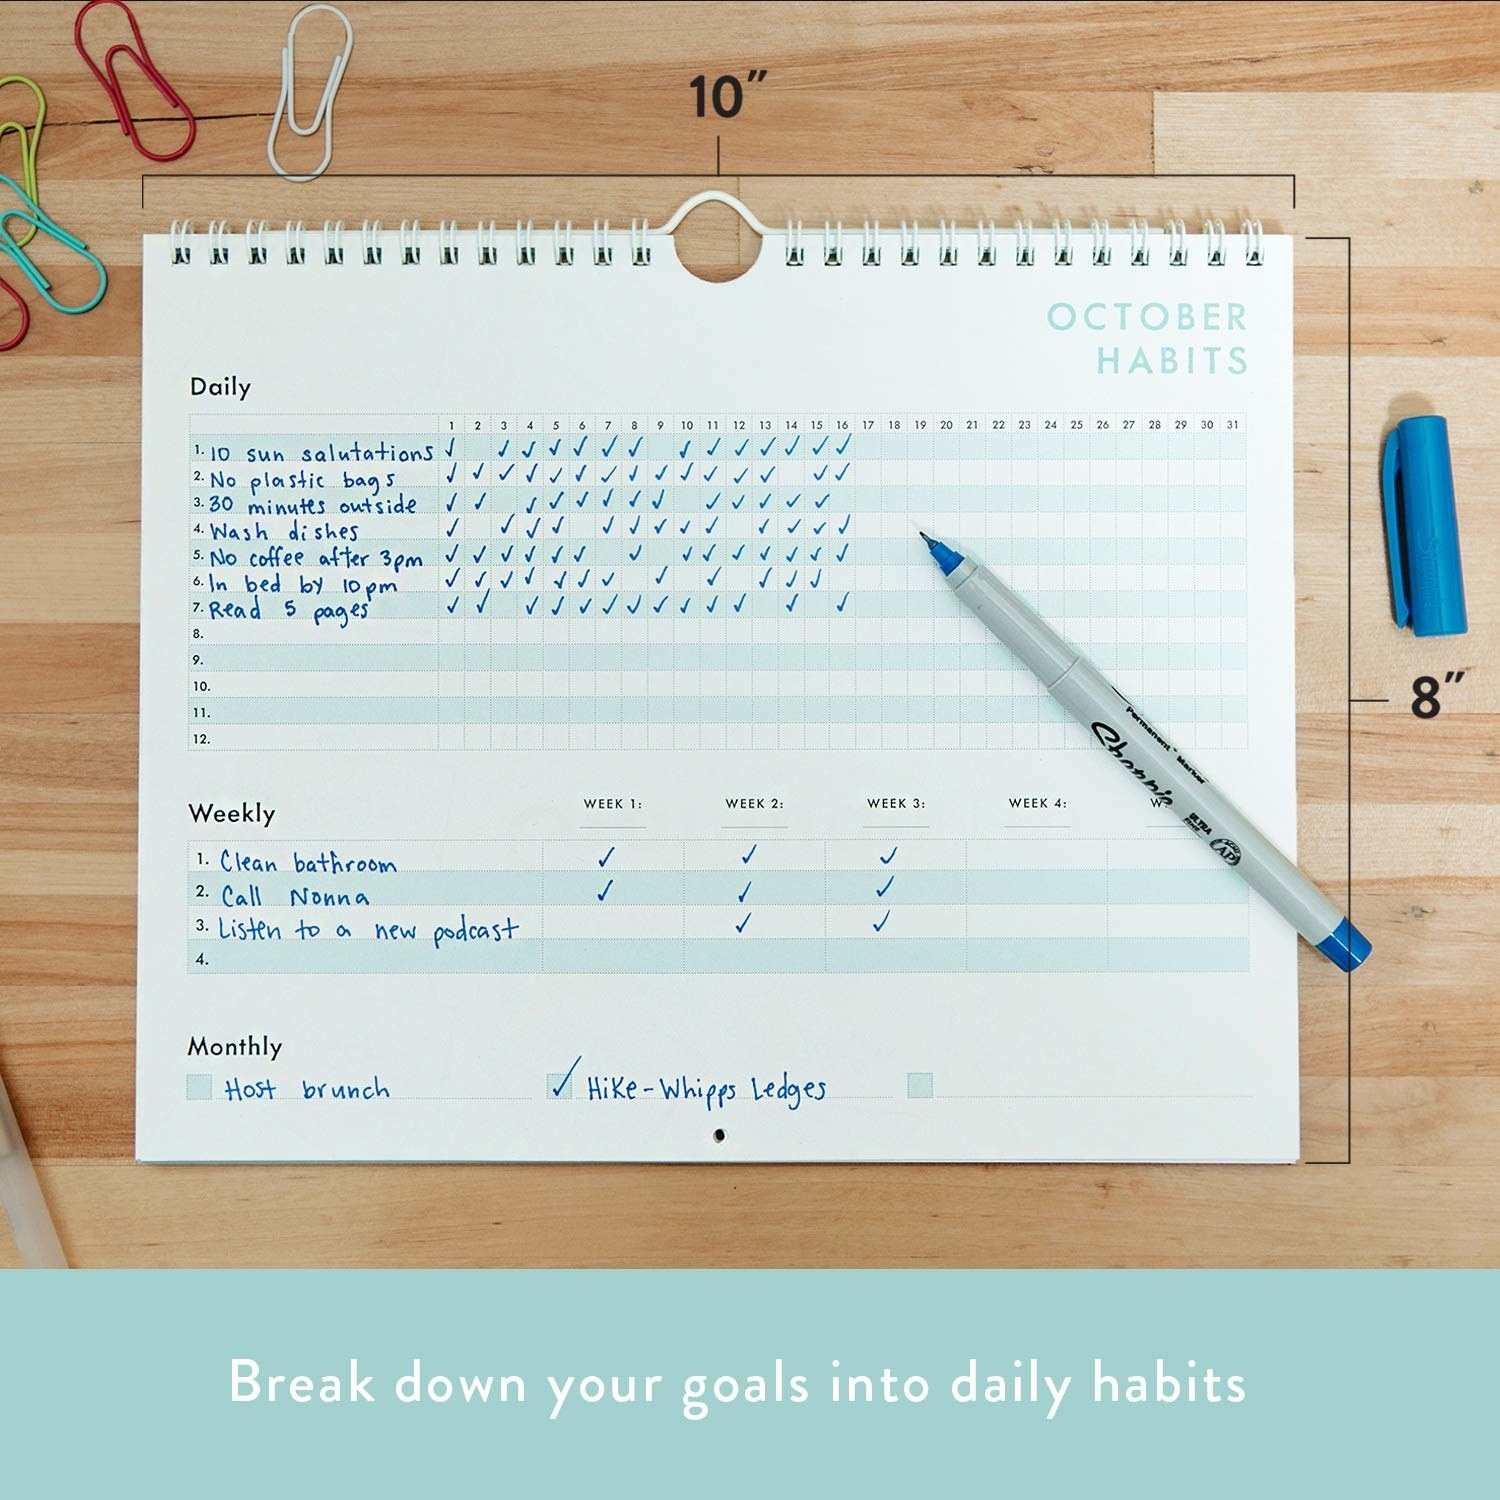 日历与部分每日、每周和每月的习惯跟踪和框填写习惯和检查